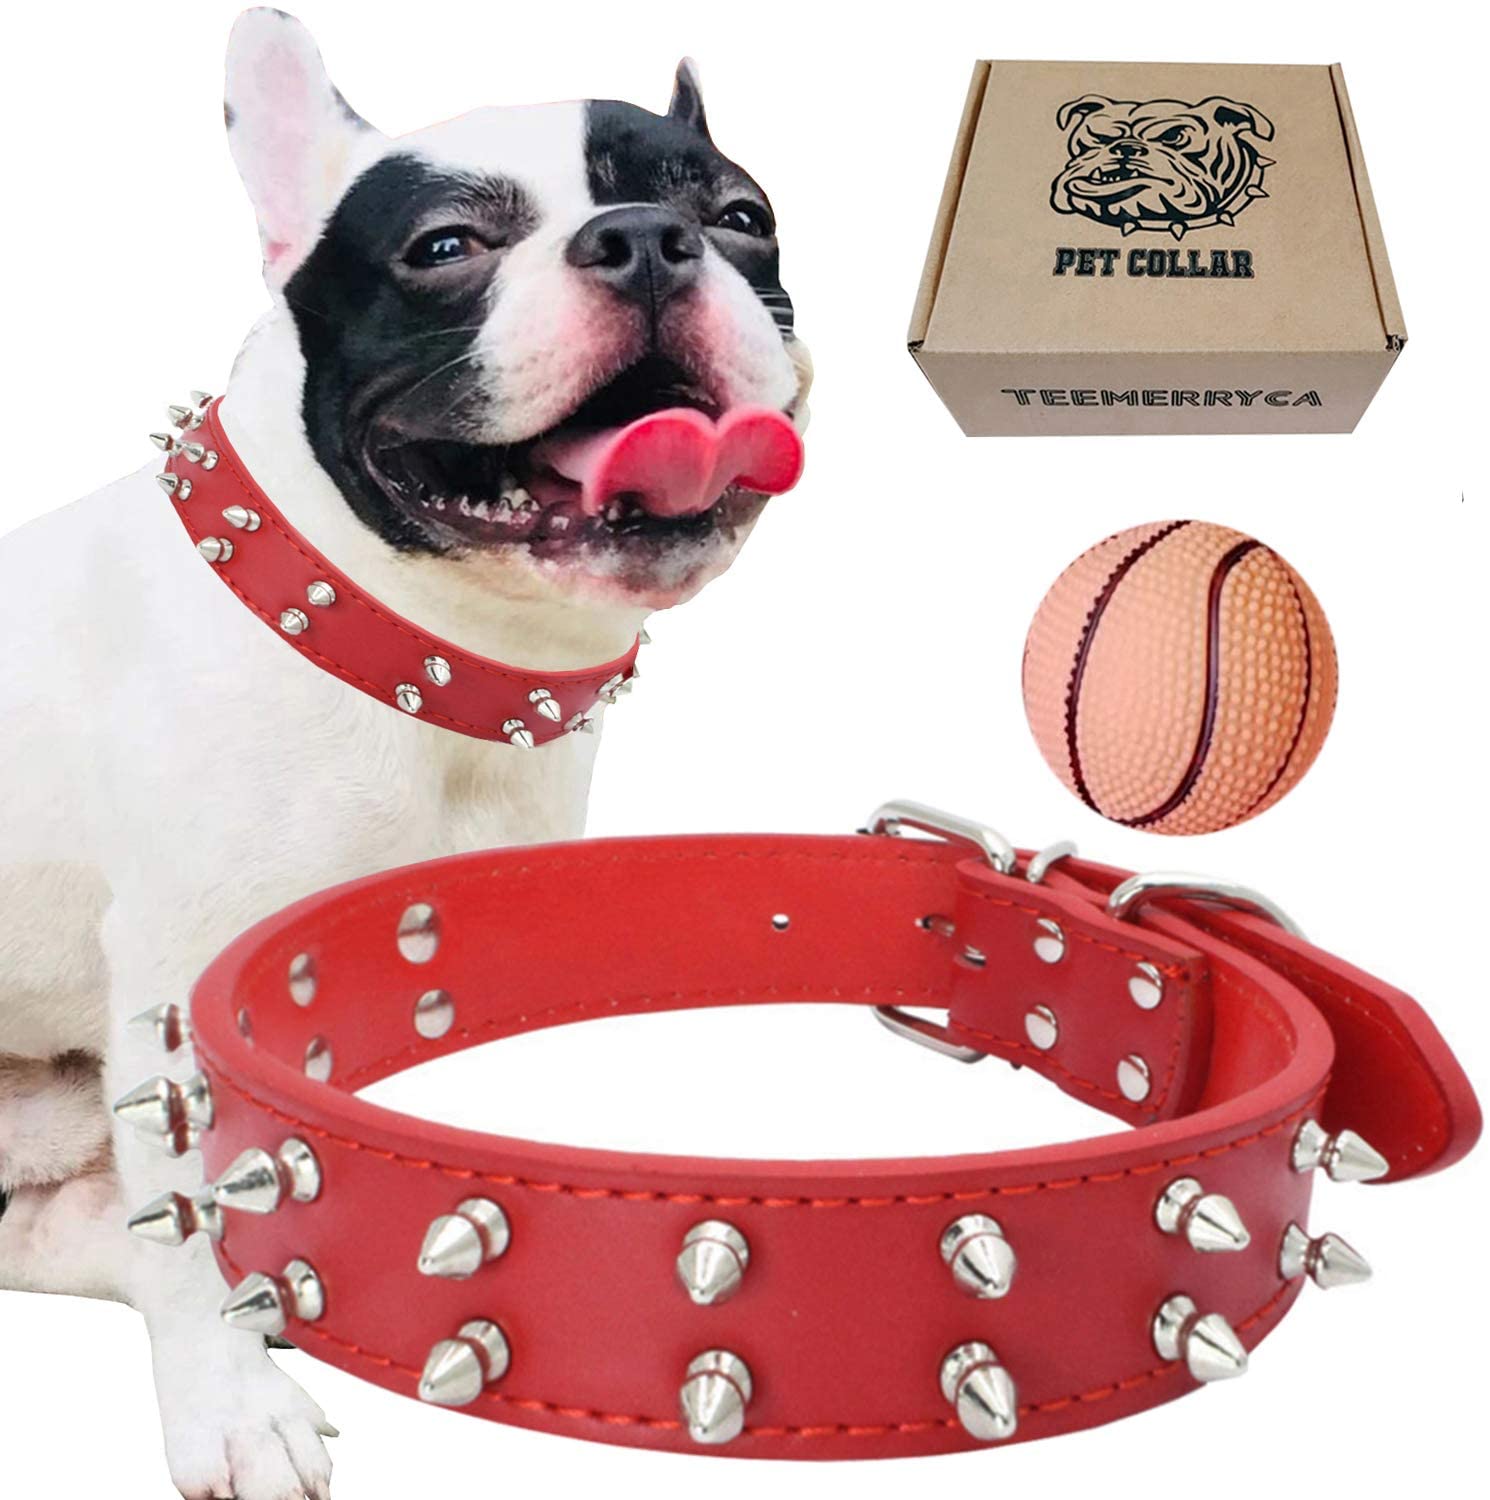  teemerryca - Collar de Piel sintética para Perros medianos y Grandes como Bulldog francés, Pug, Labrador, Pastor alemán 